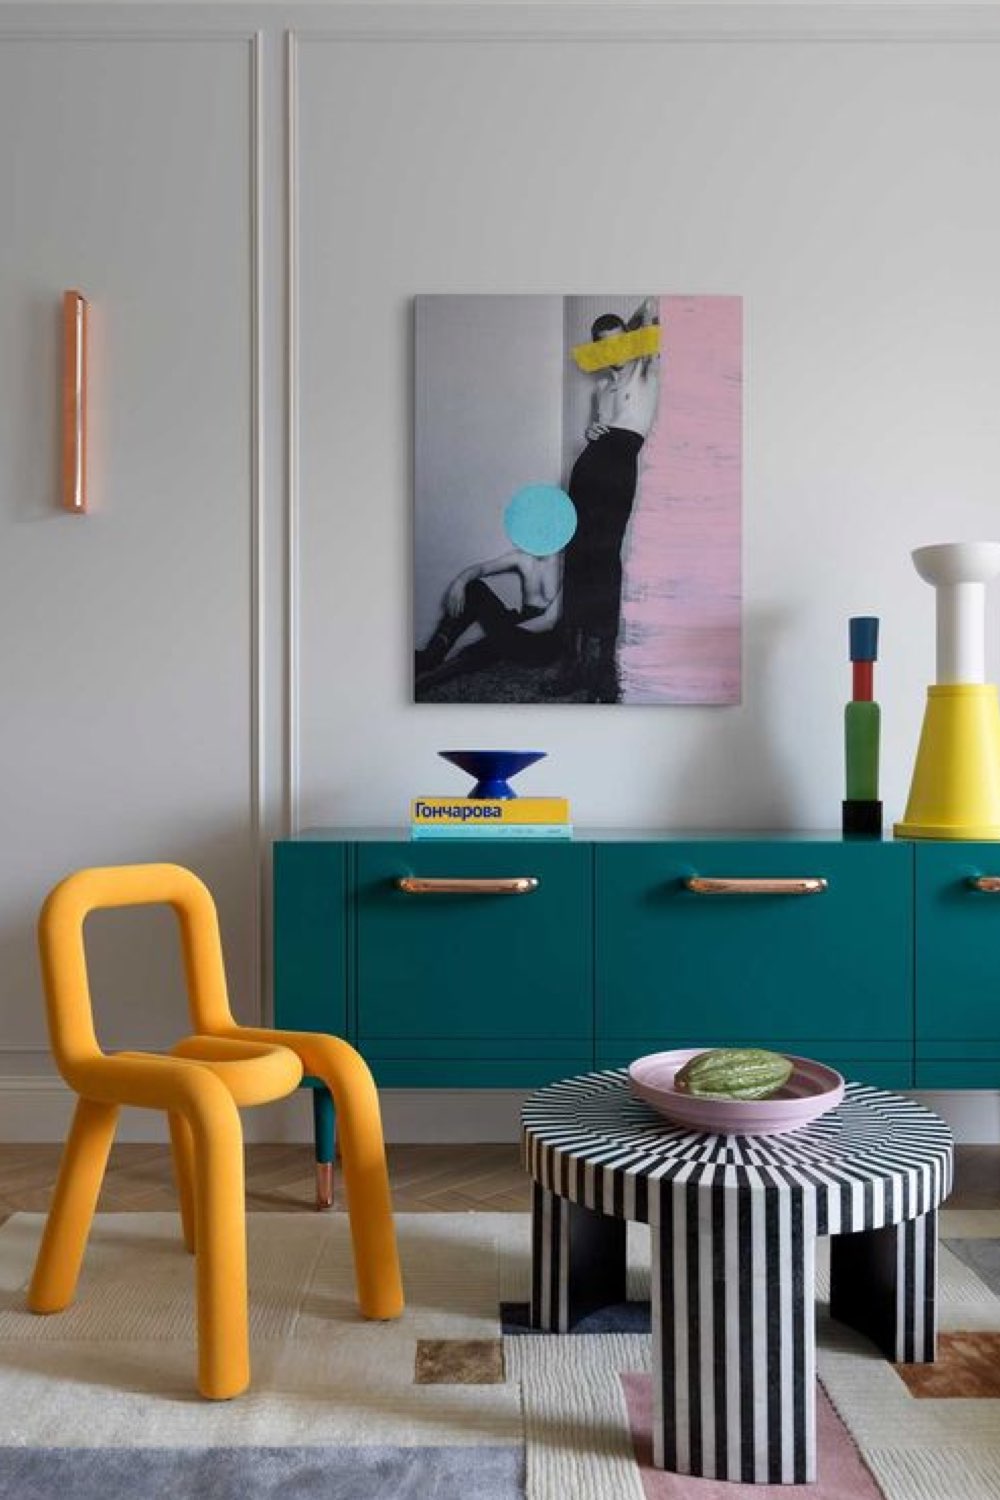 creer touche de couleur deco exemple design chic meuble buffet couleur bleu canard fauteuil design jaune table basse blanche et noir à rayures